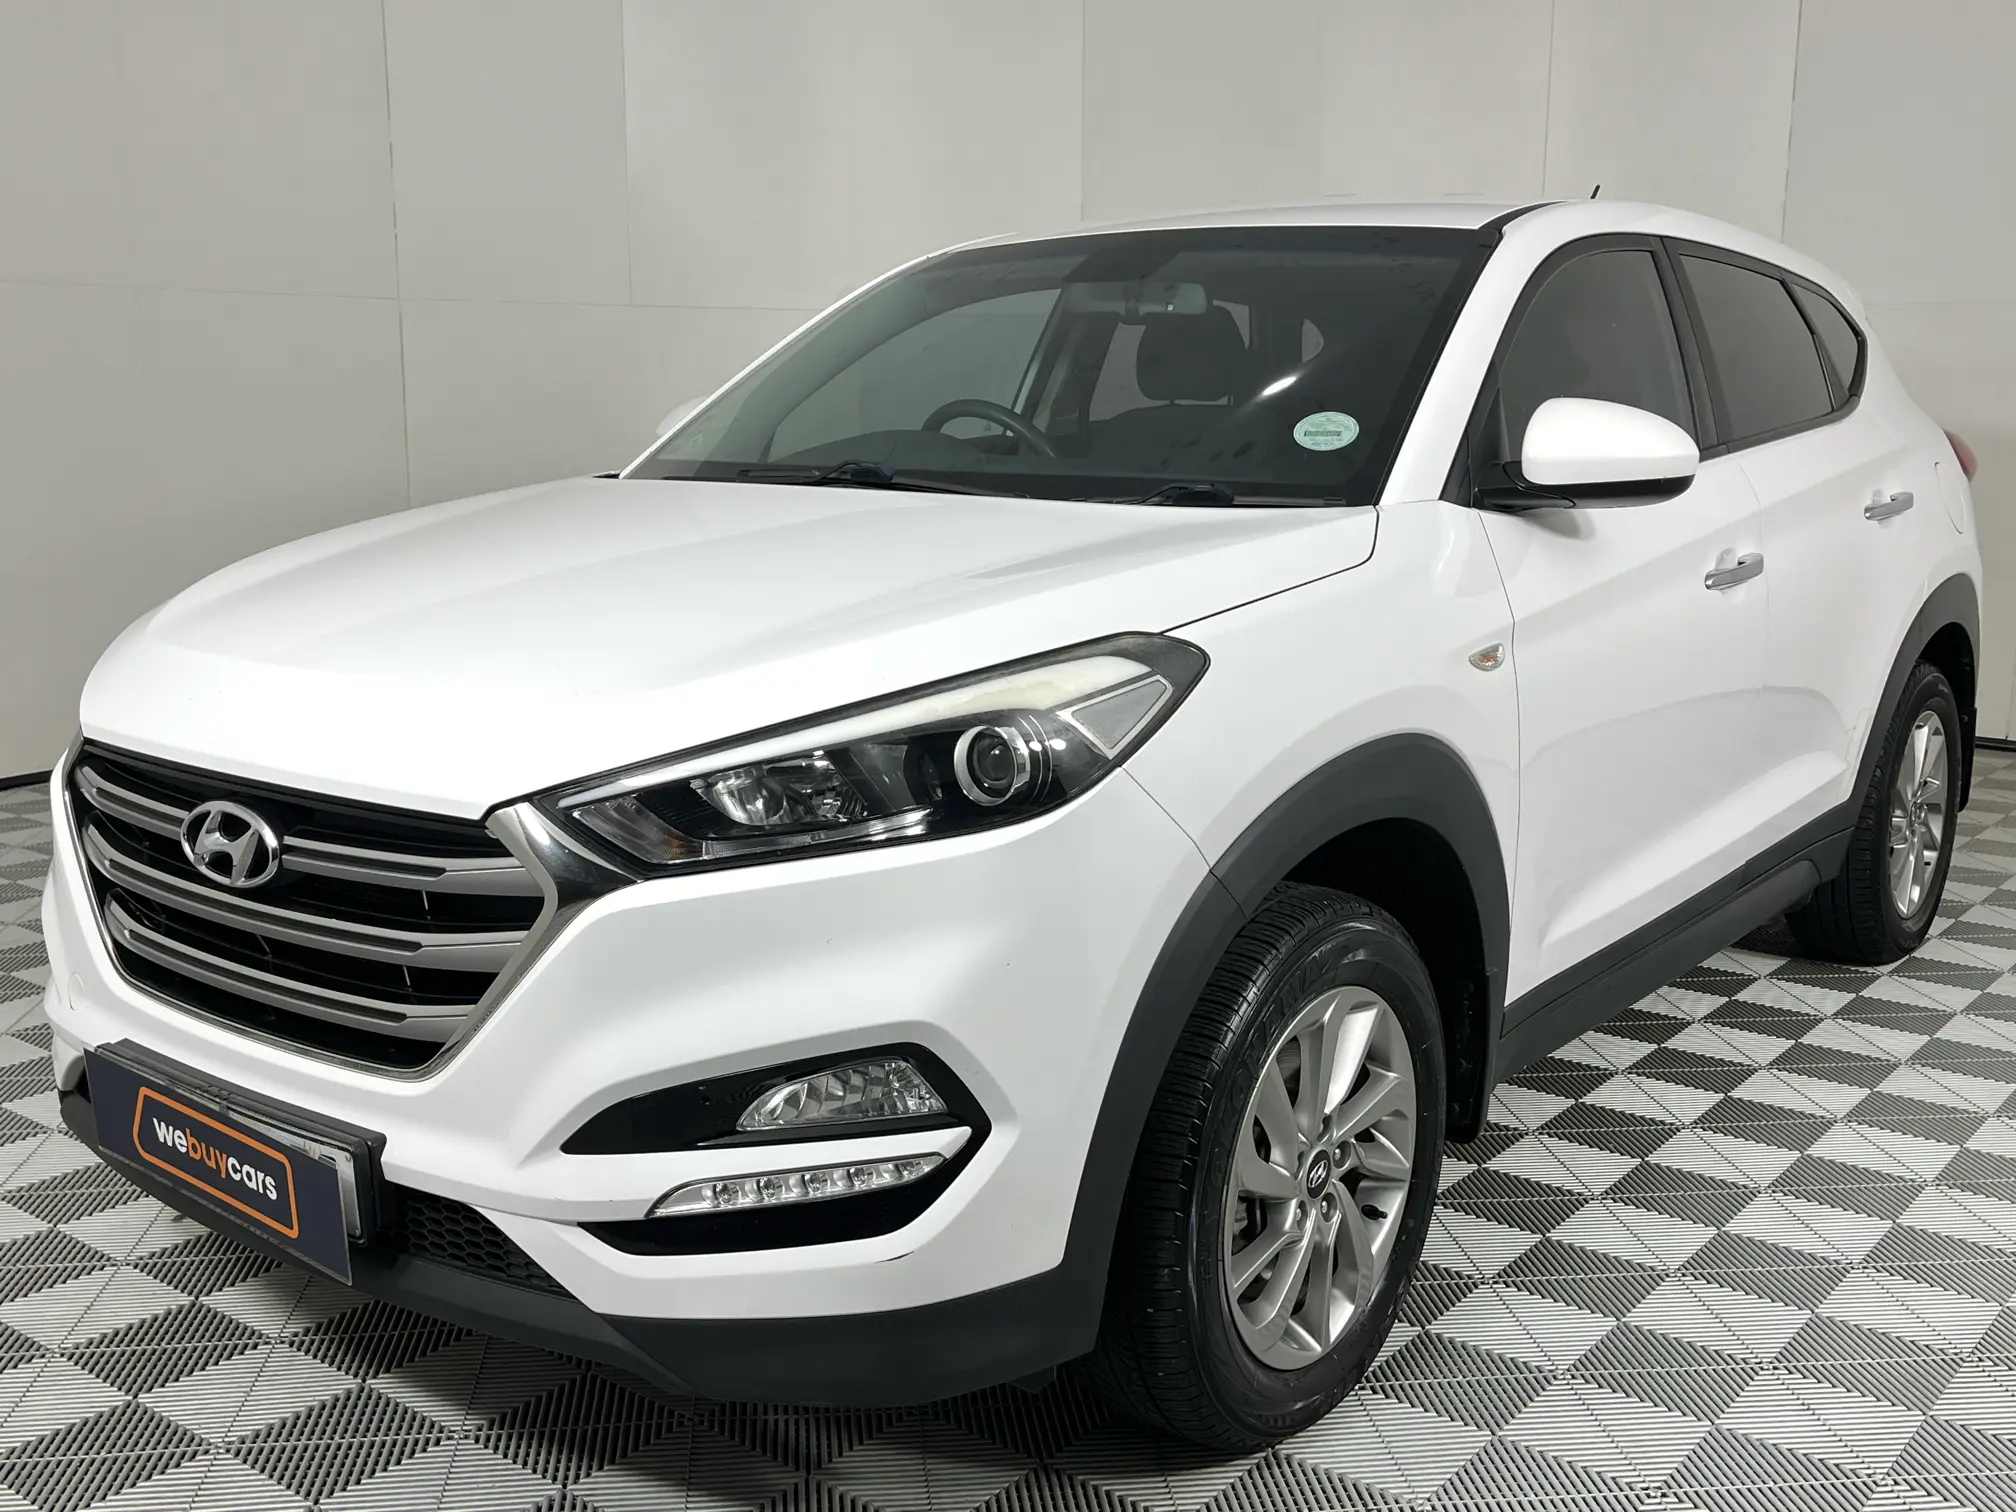 2016 Hyundai Tucson 2.0 Premium